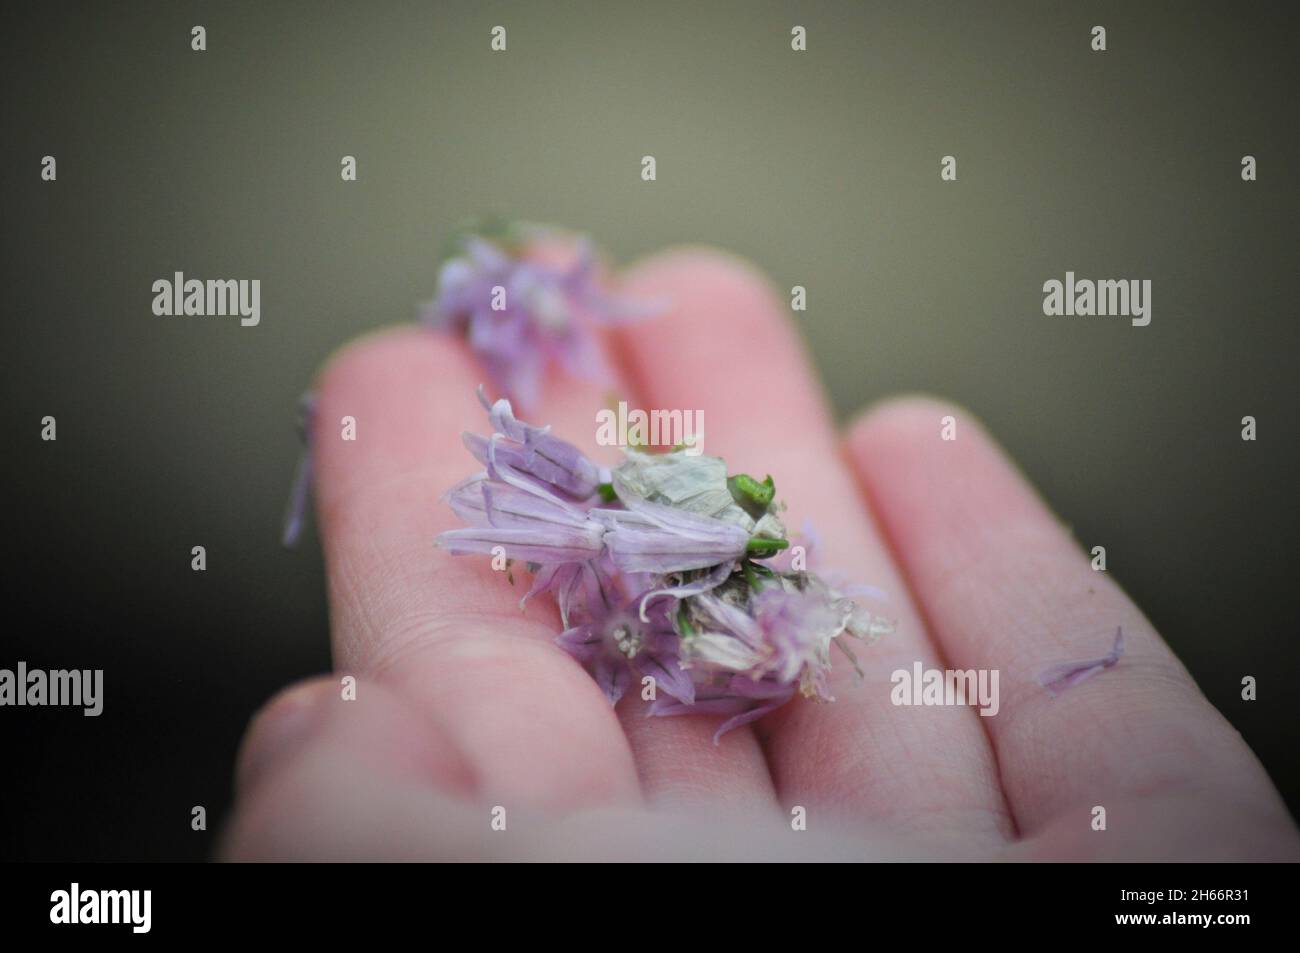 La mano de un niño con flores de cebollino púrpura (Allium schoenoprasum- herb) descansando sobre los dedos Foto de stock